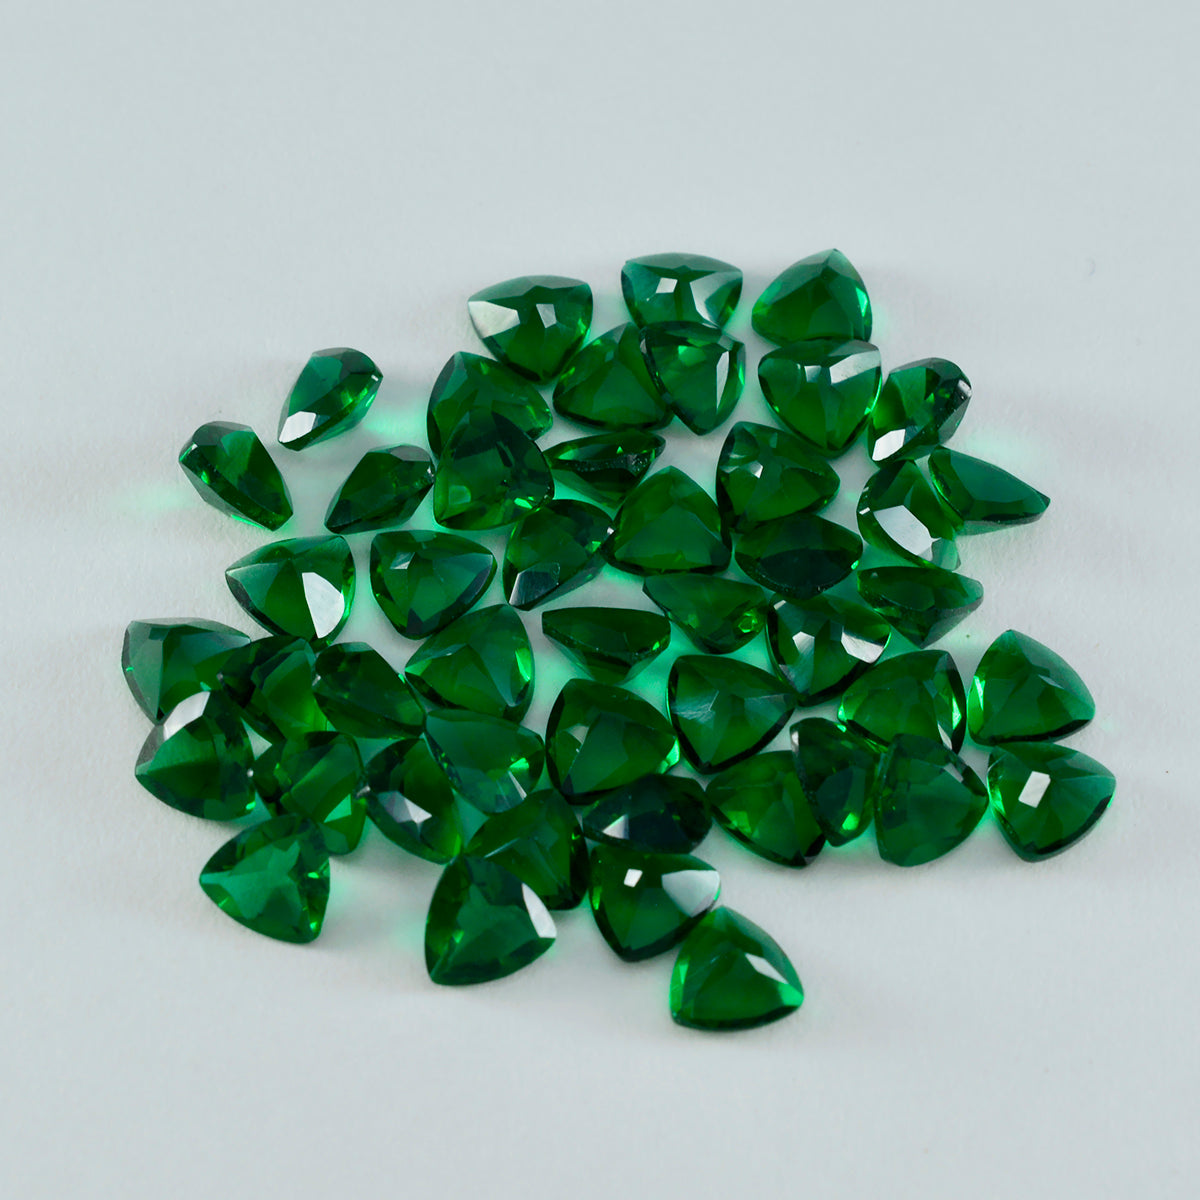 riyogems 1 шт., зеленый изумруд, граненый драгоценный камень 6x6 мм, форма триллиона, потрясающее качество